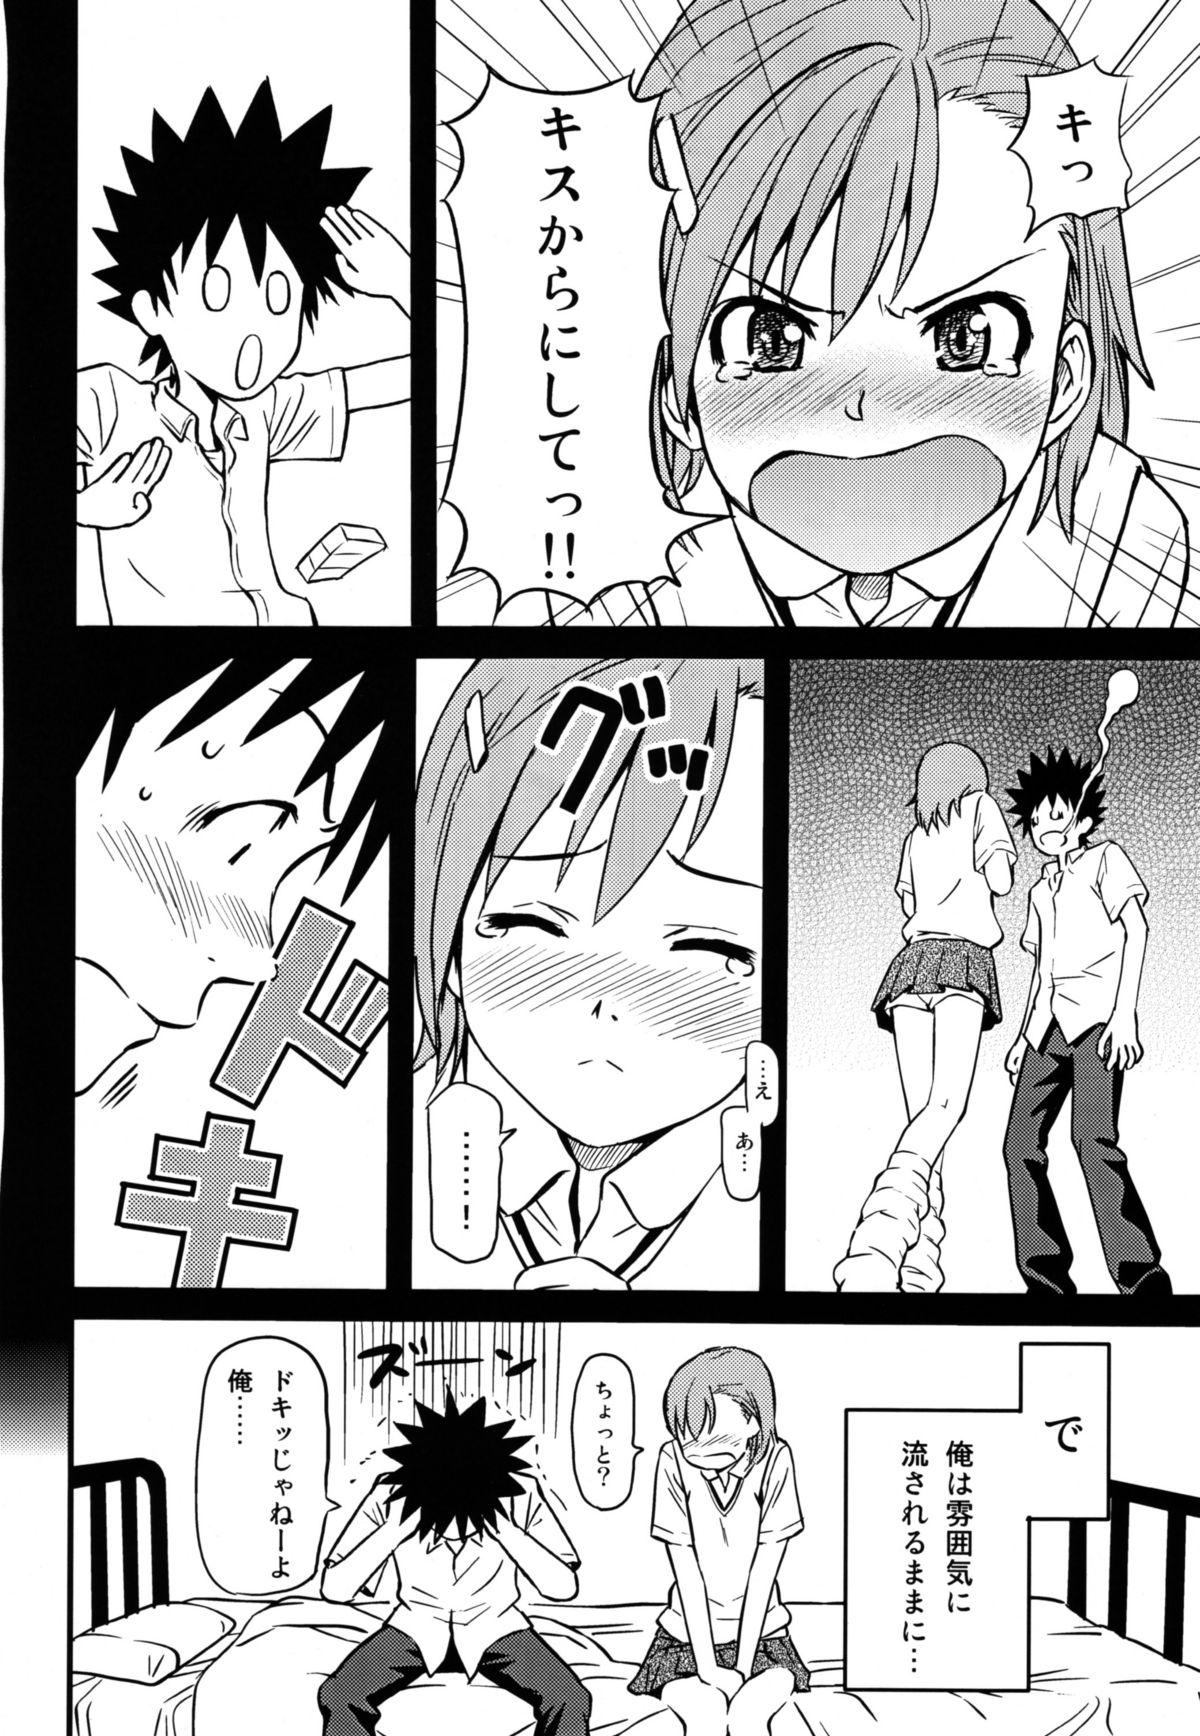 Chichona Toaru H no Railgun - Toaru kagaku no railgun Toaru majutsu no index Anime - Page 8